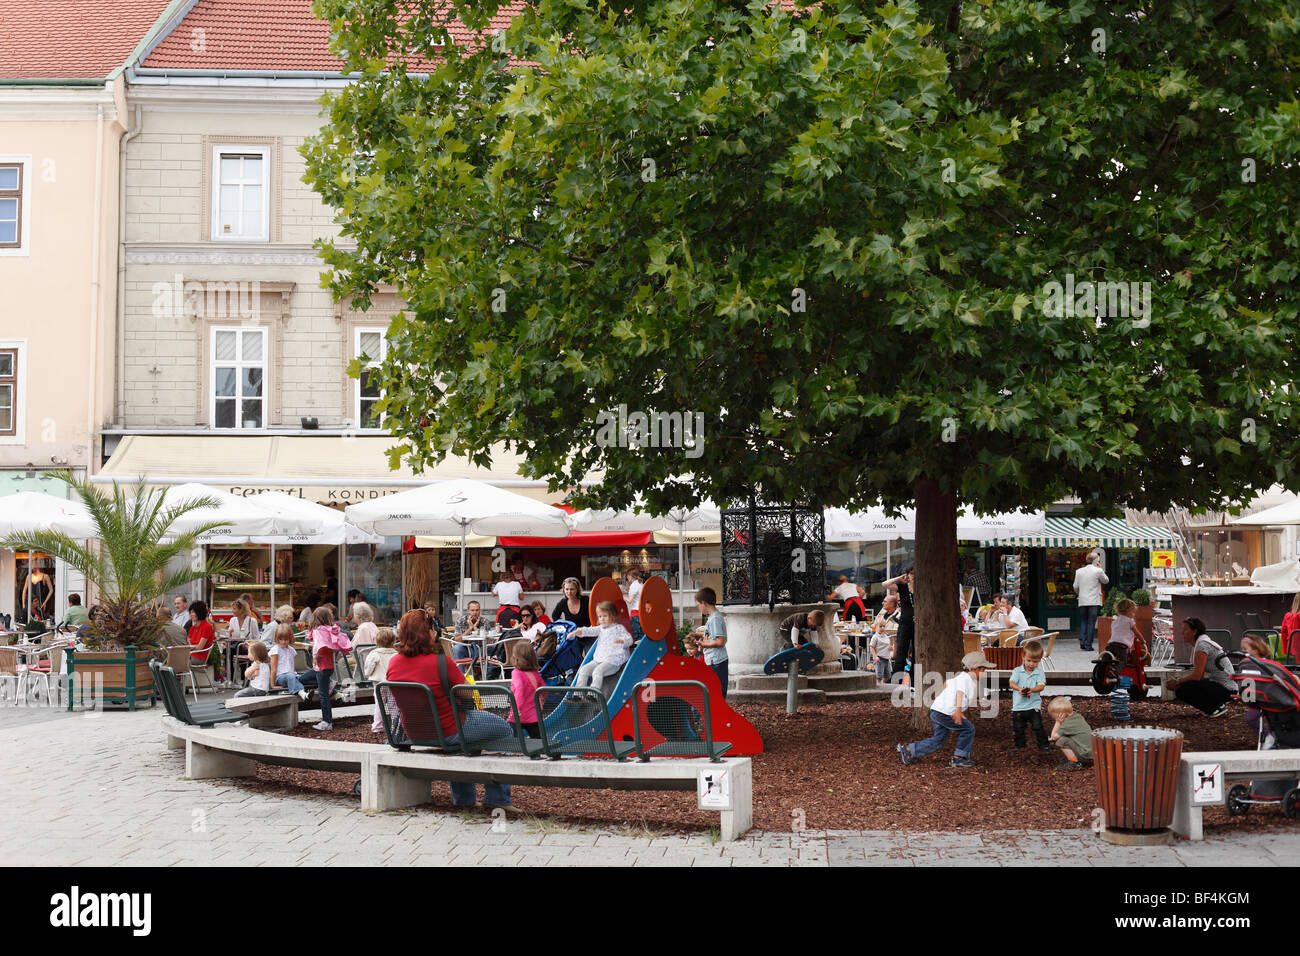 Per bambini playgroung nella piazza principale, Wiener Neustadt, Austria Inferiore, Austria, Europa Foto Stock